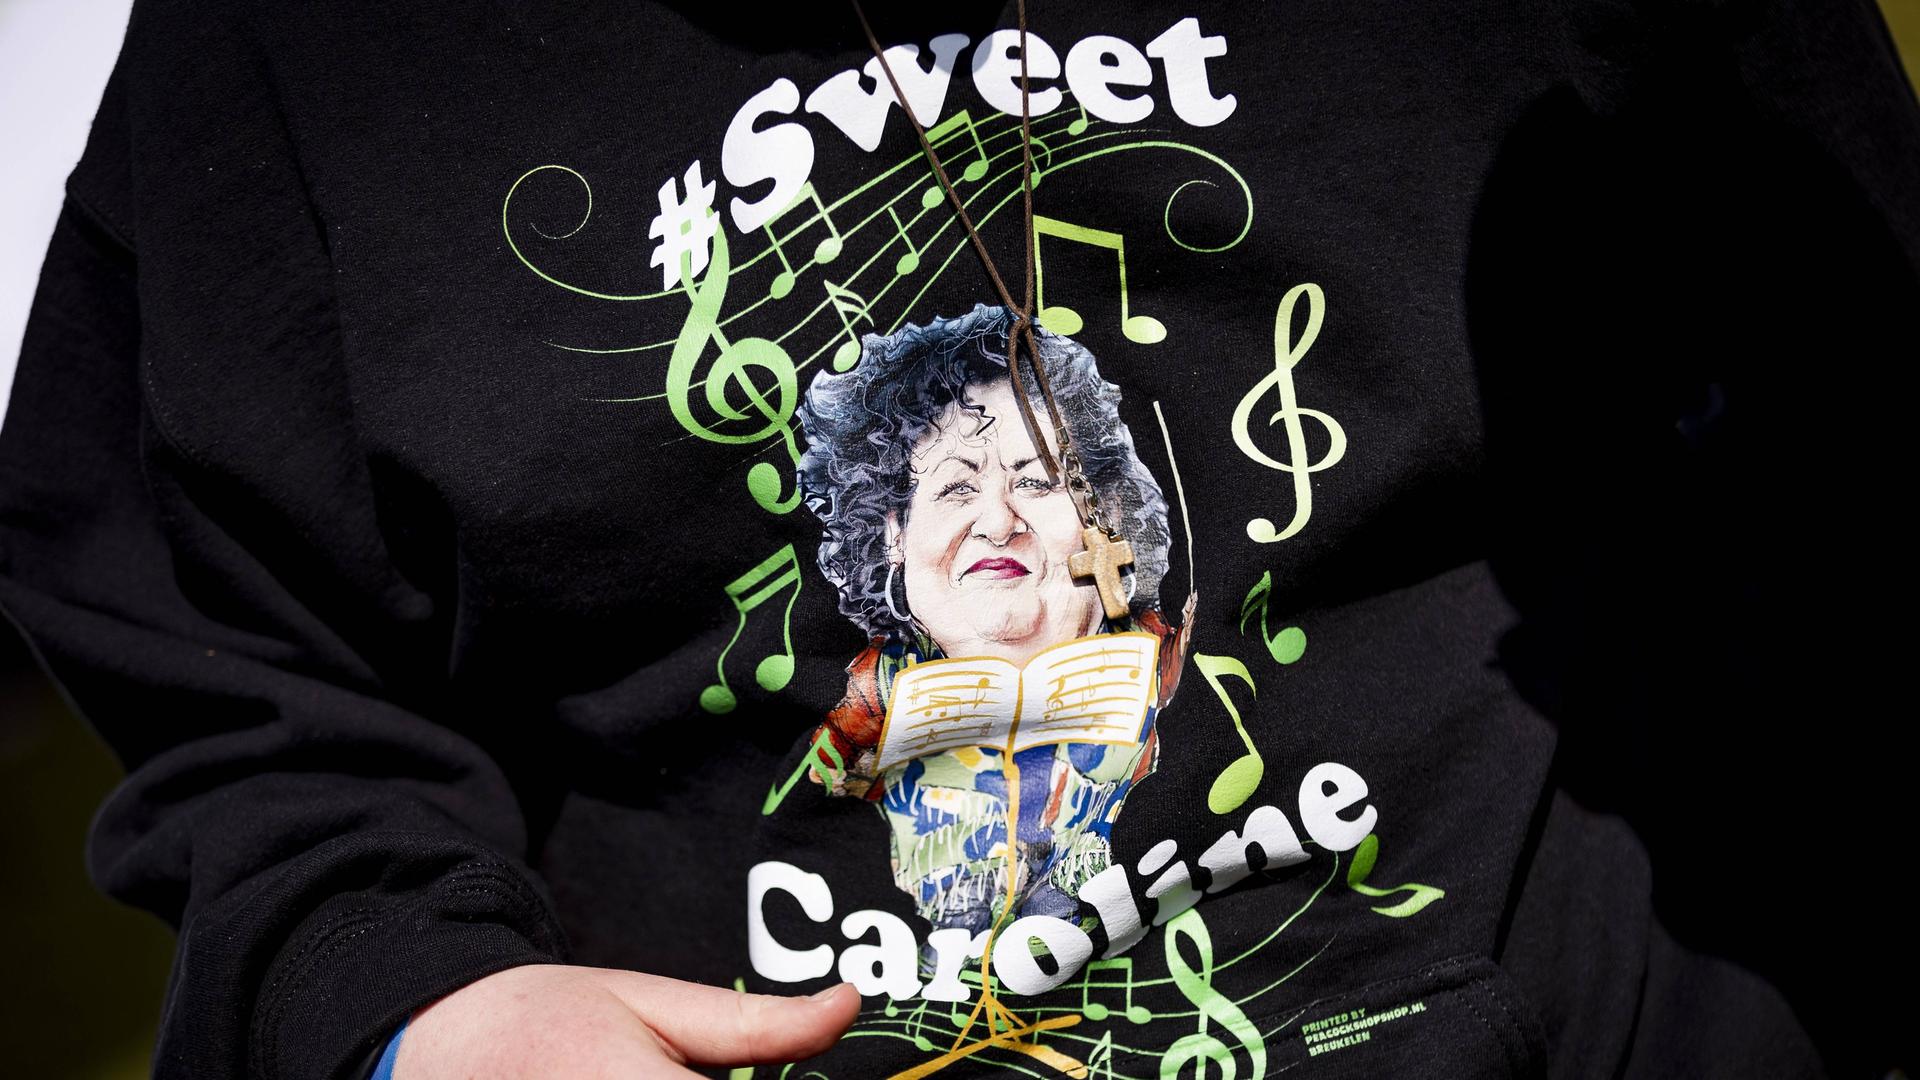 Ein Pullover mit einer Illustration von Caroline van der Plas von der Bauer-Bürger-Bewegung in den Niederlanden. Er trägt die Aufschrift: "Sweet Caroline". 2023